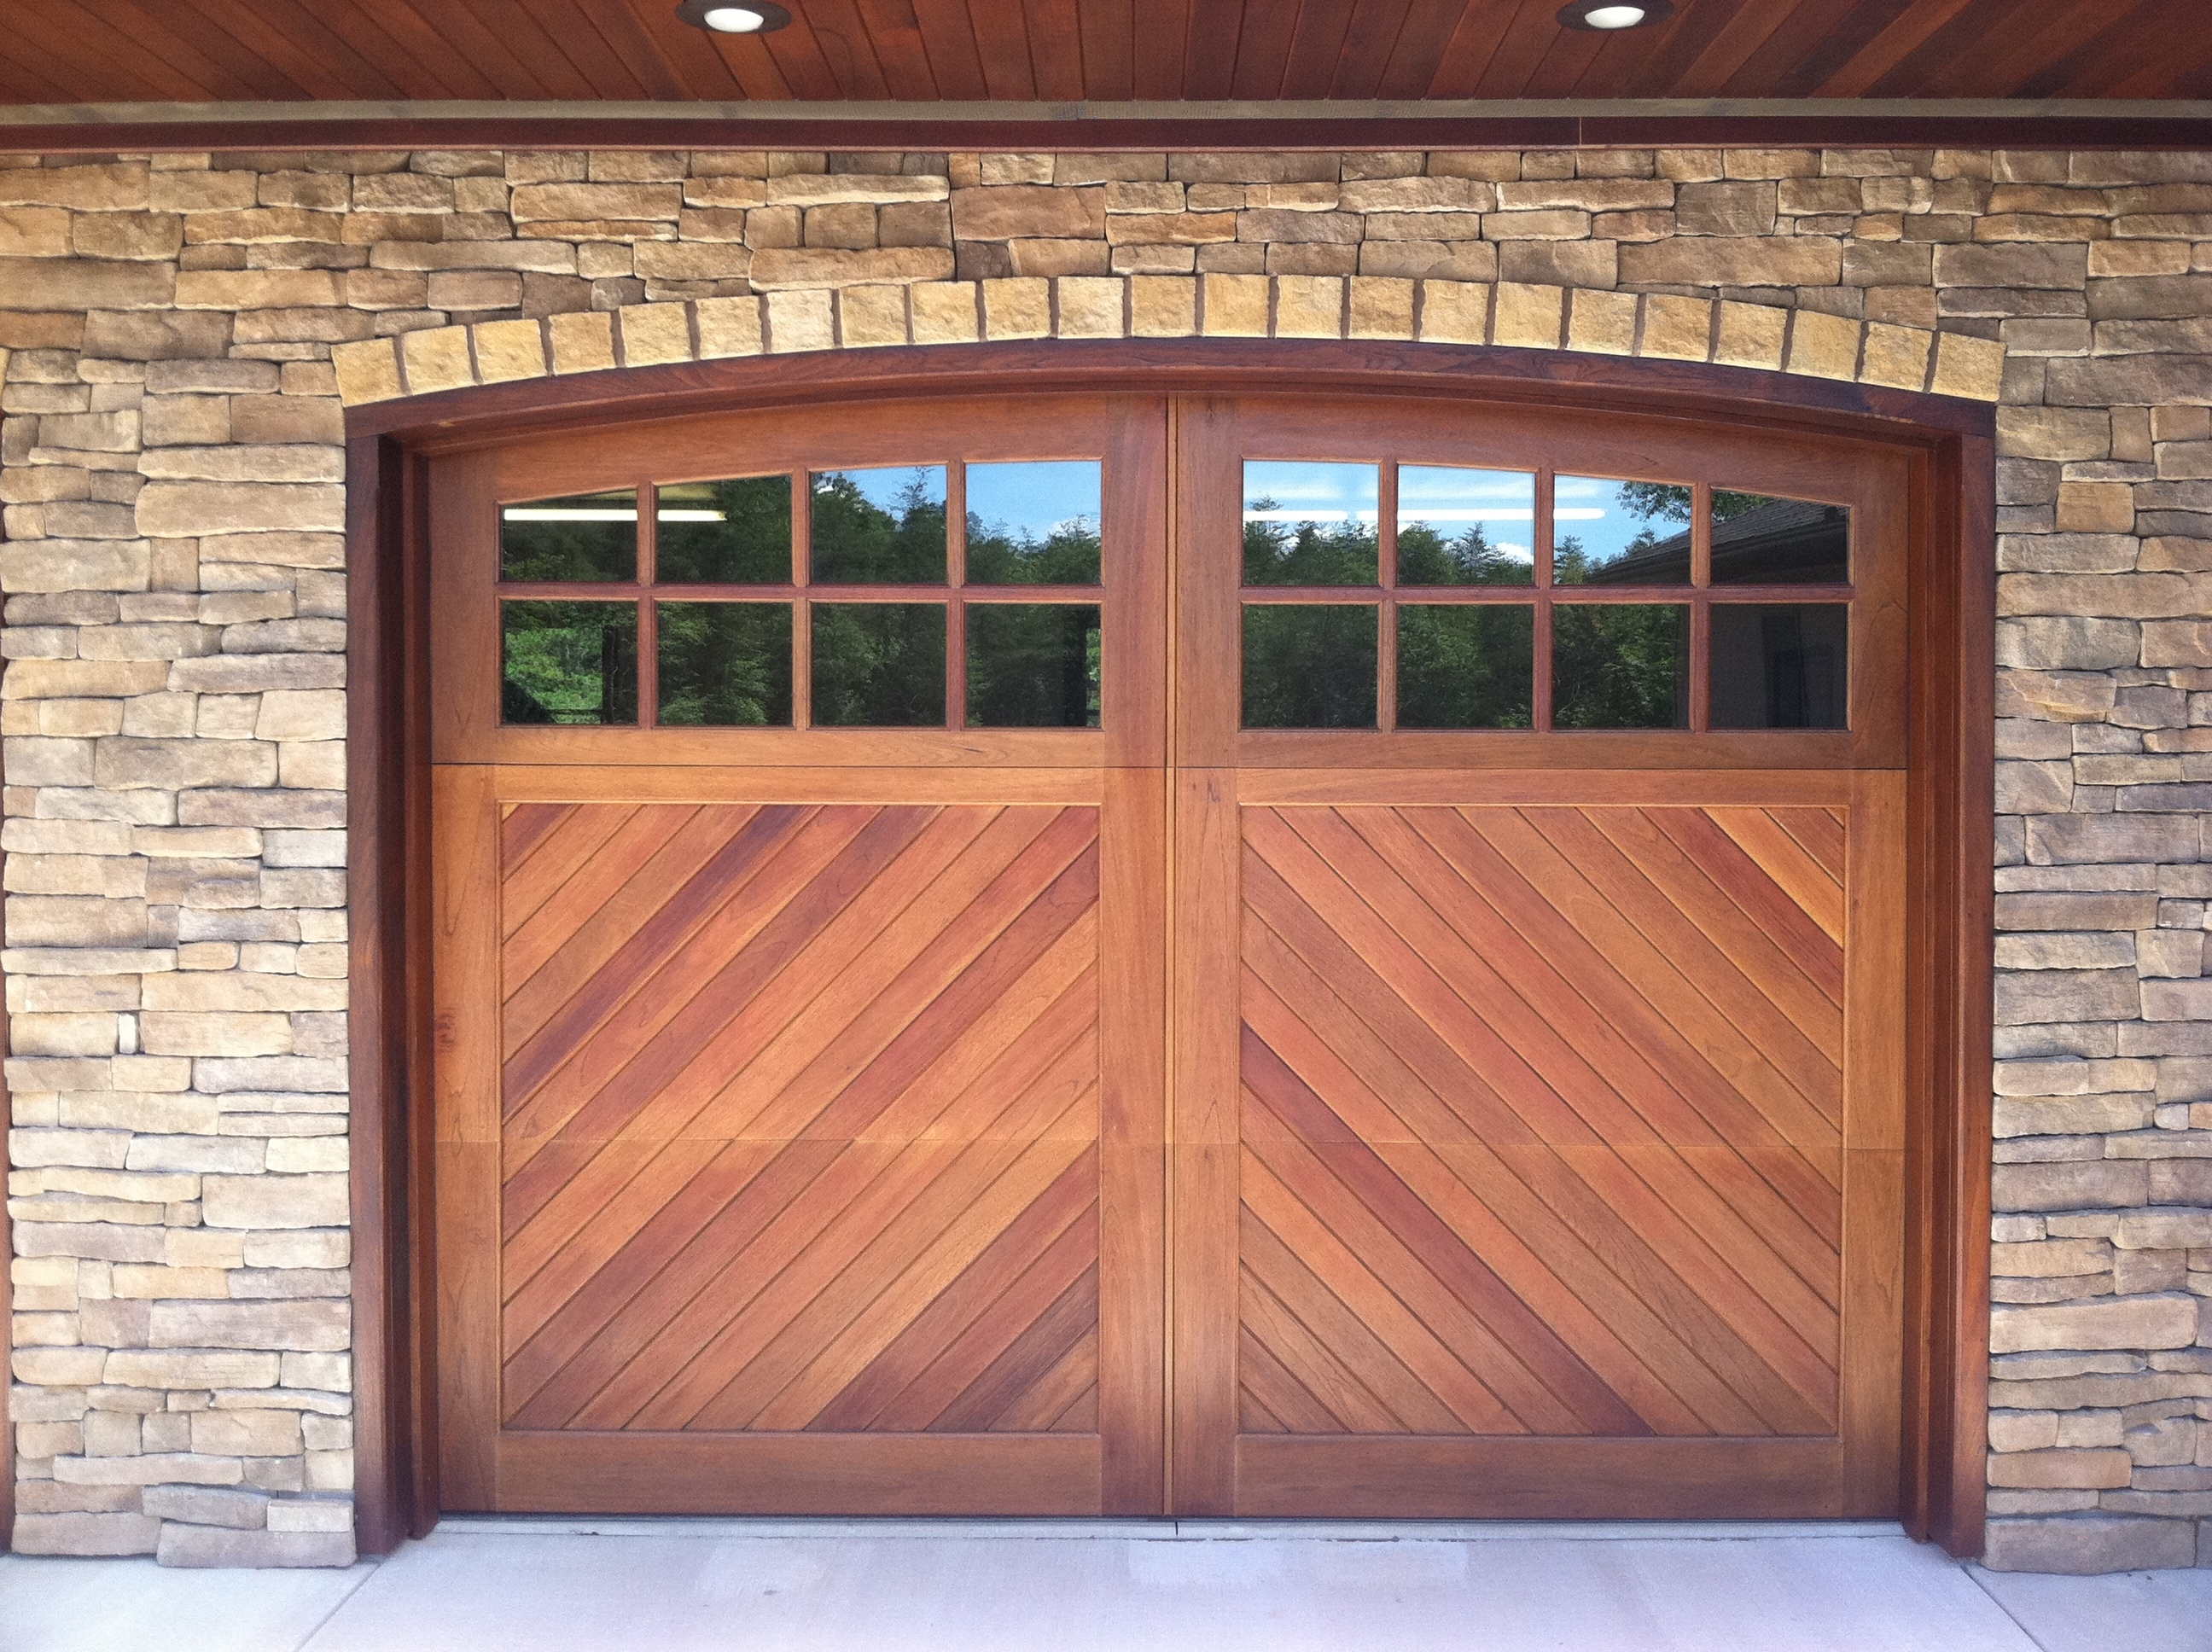 Wooden Garage Doors With Windows